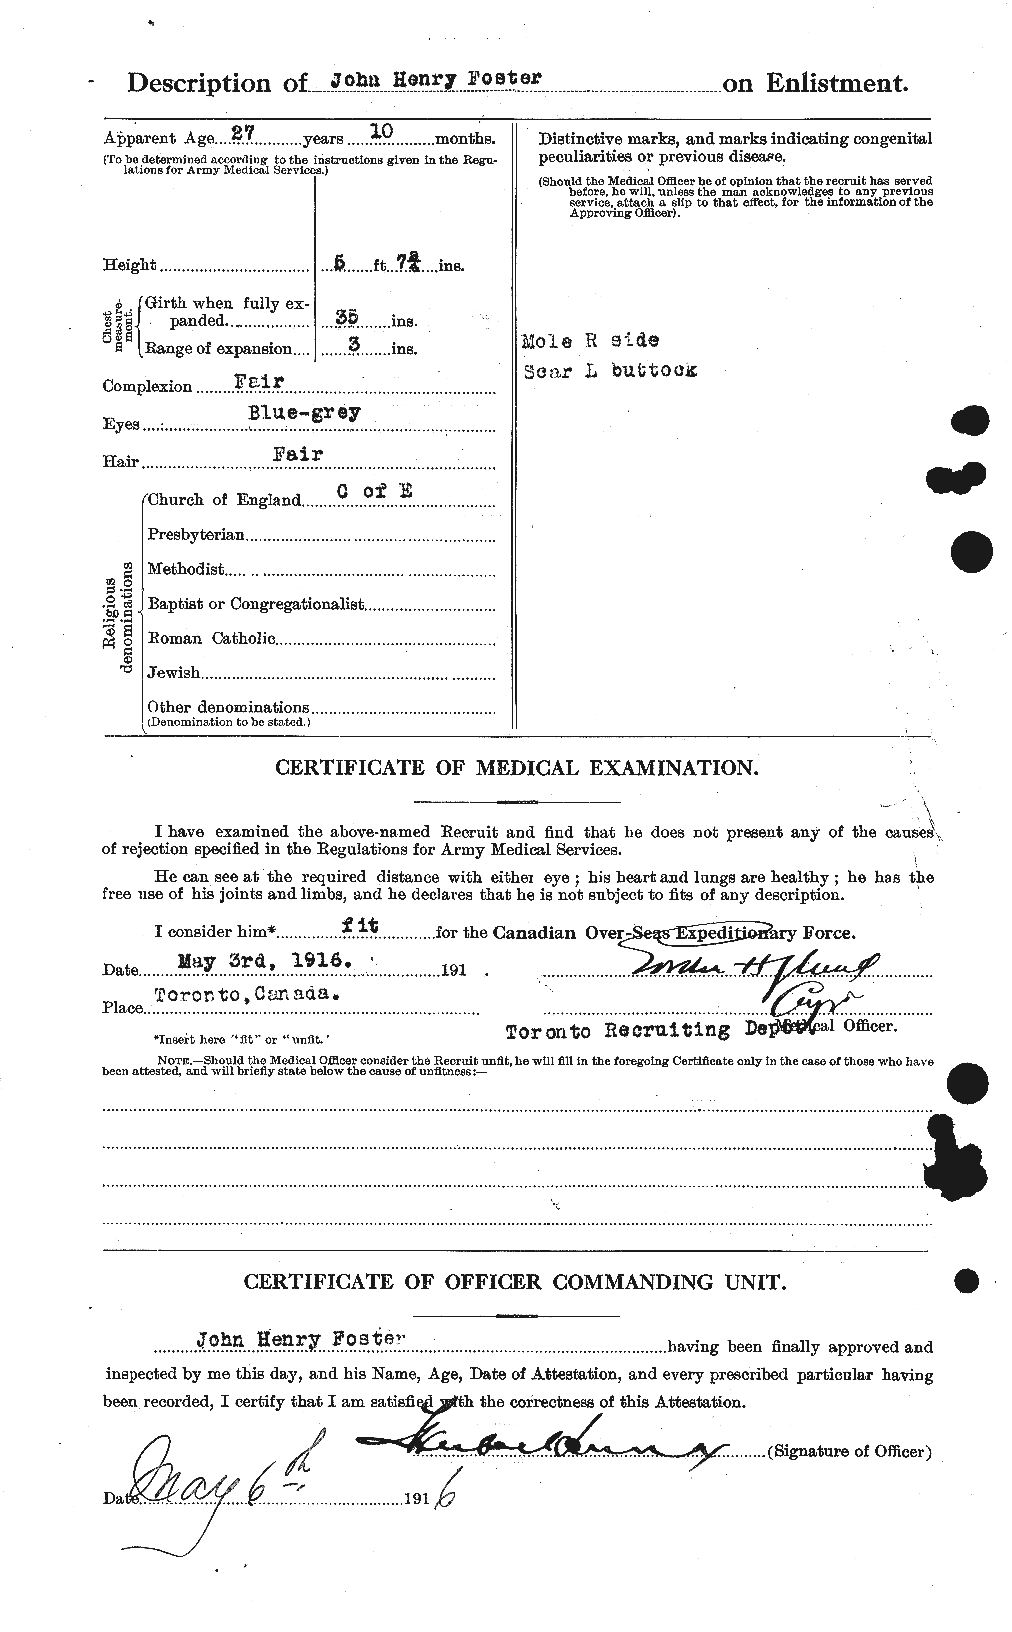 Dossiers du Personnel de la Première Guerre mondiale - CEC 333363b